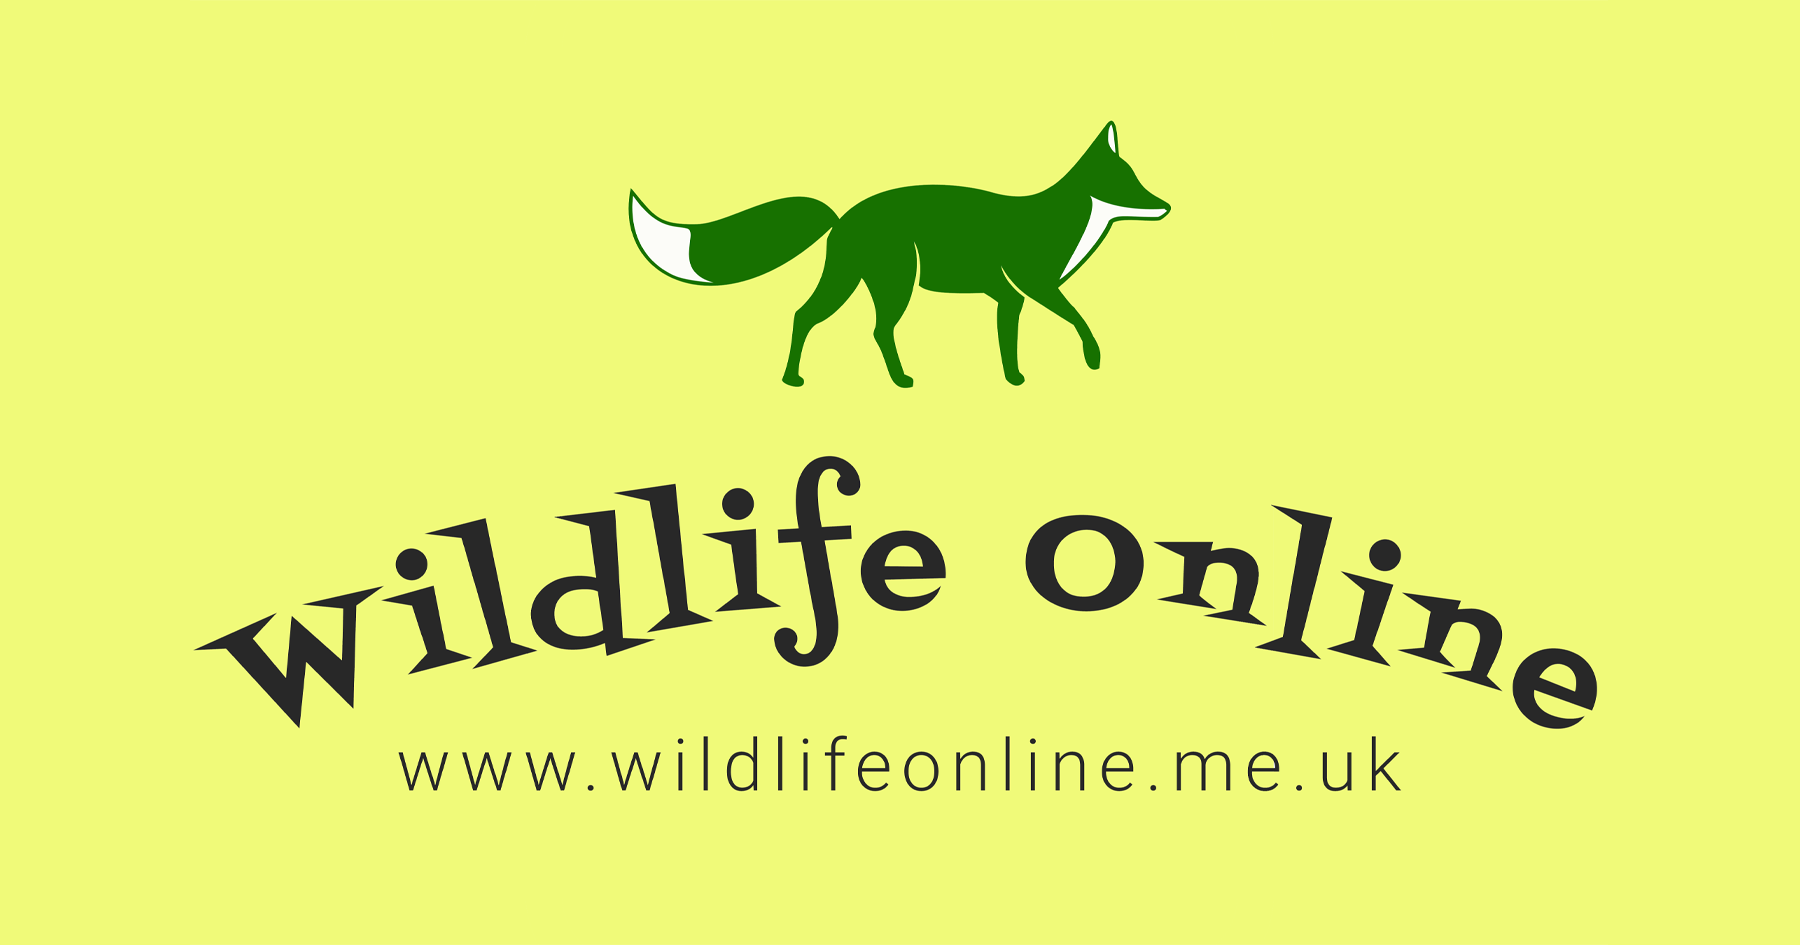 www.wildlifeonline.me.uk